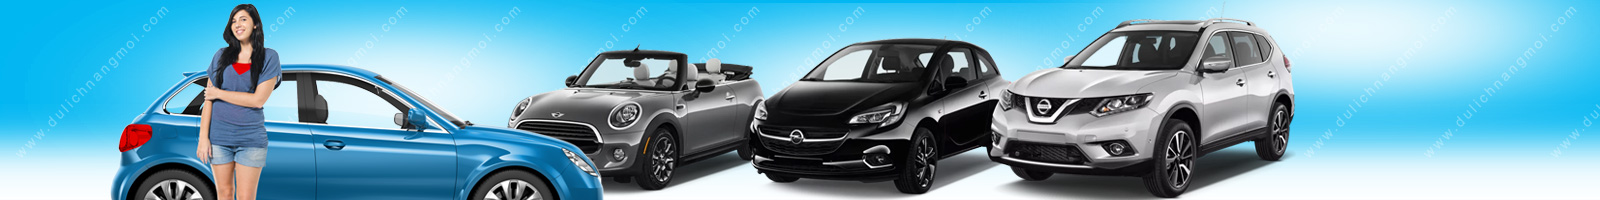 Cho thuê xe 4 chỗ tự lái Mazda 2 tại TpHCM - Giá ưu đãi